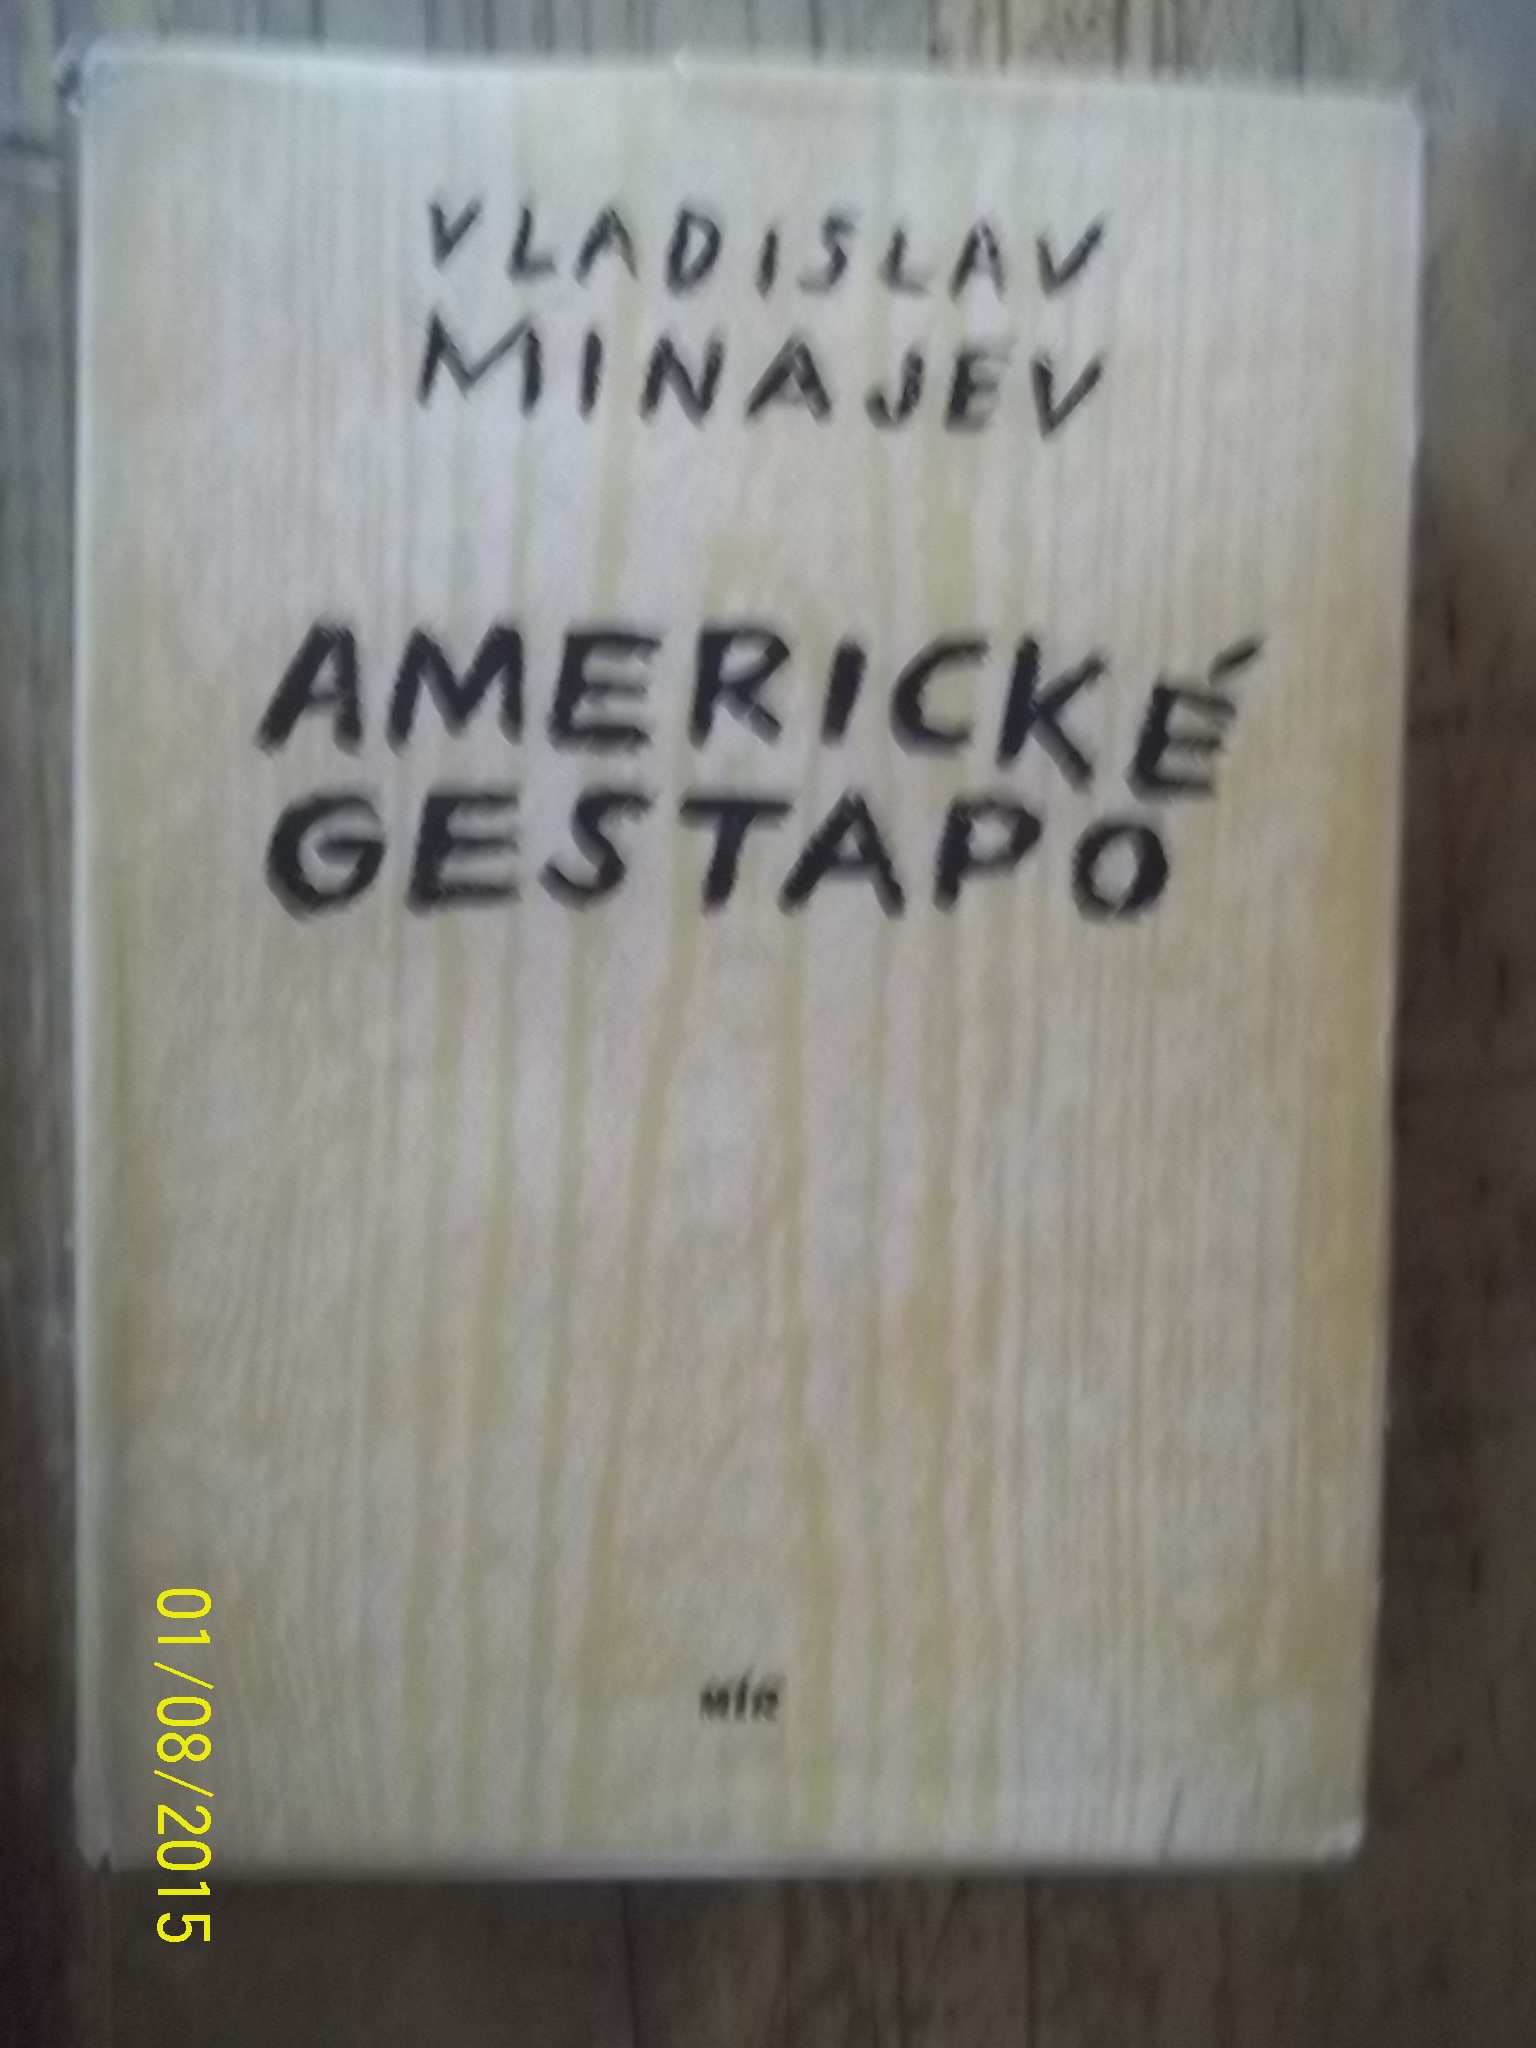 zobrazit detail knihy Minajev, Vladislav Nikolajevi: Americk gestapo